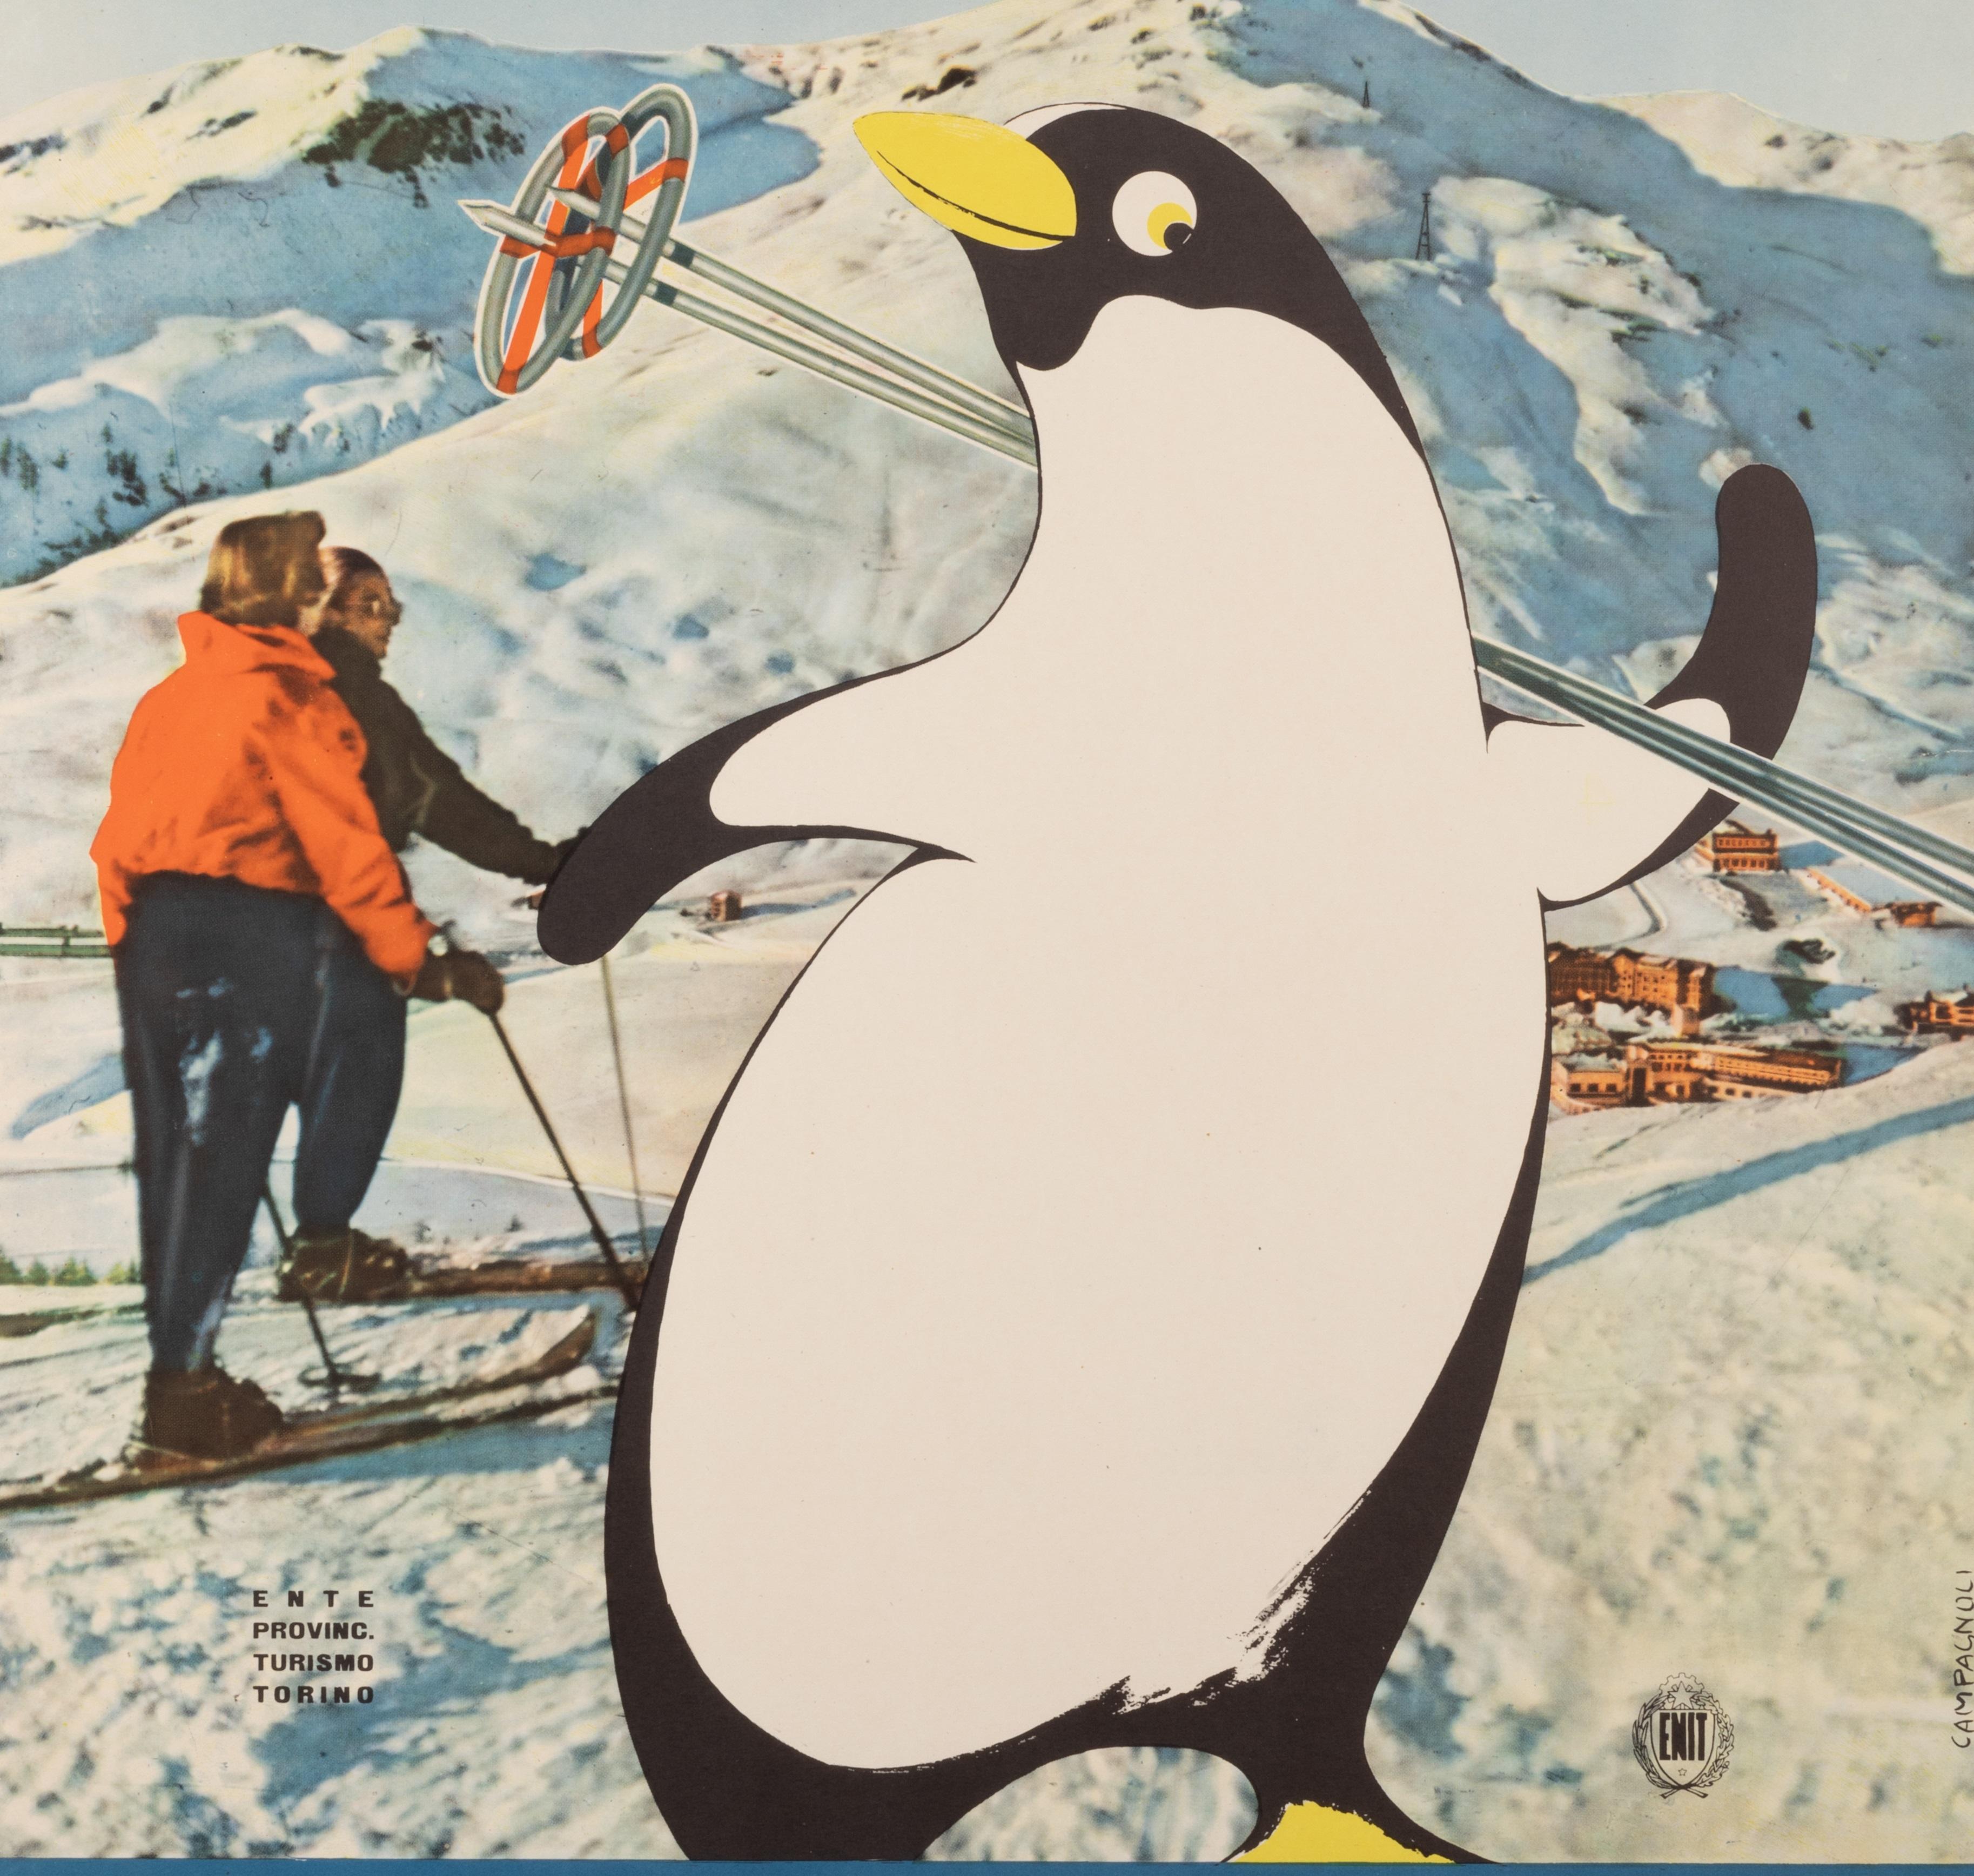 Original Vintage Plakat für Wintersport in Turin in Italien von Campagnoli im Jahr 1955 erstellt.

Künstler: Campagnoli Adalberto 
Titel: Turin - Sports d'Hiver - Italien
Datum: ca. 1955
Größe: 24,4 x 39,8 Zoll. / 62 x 101 cm.
Drucker: ROGGERO ET